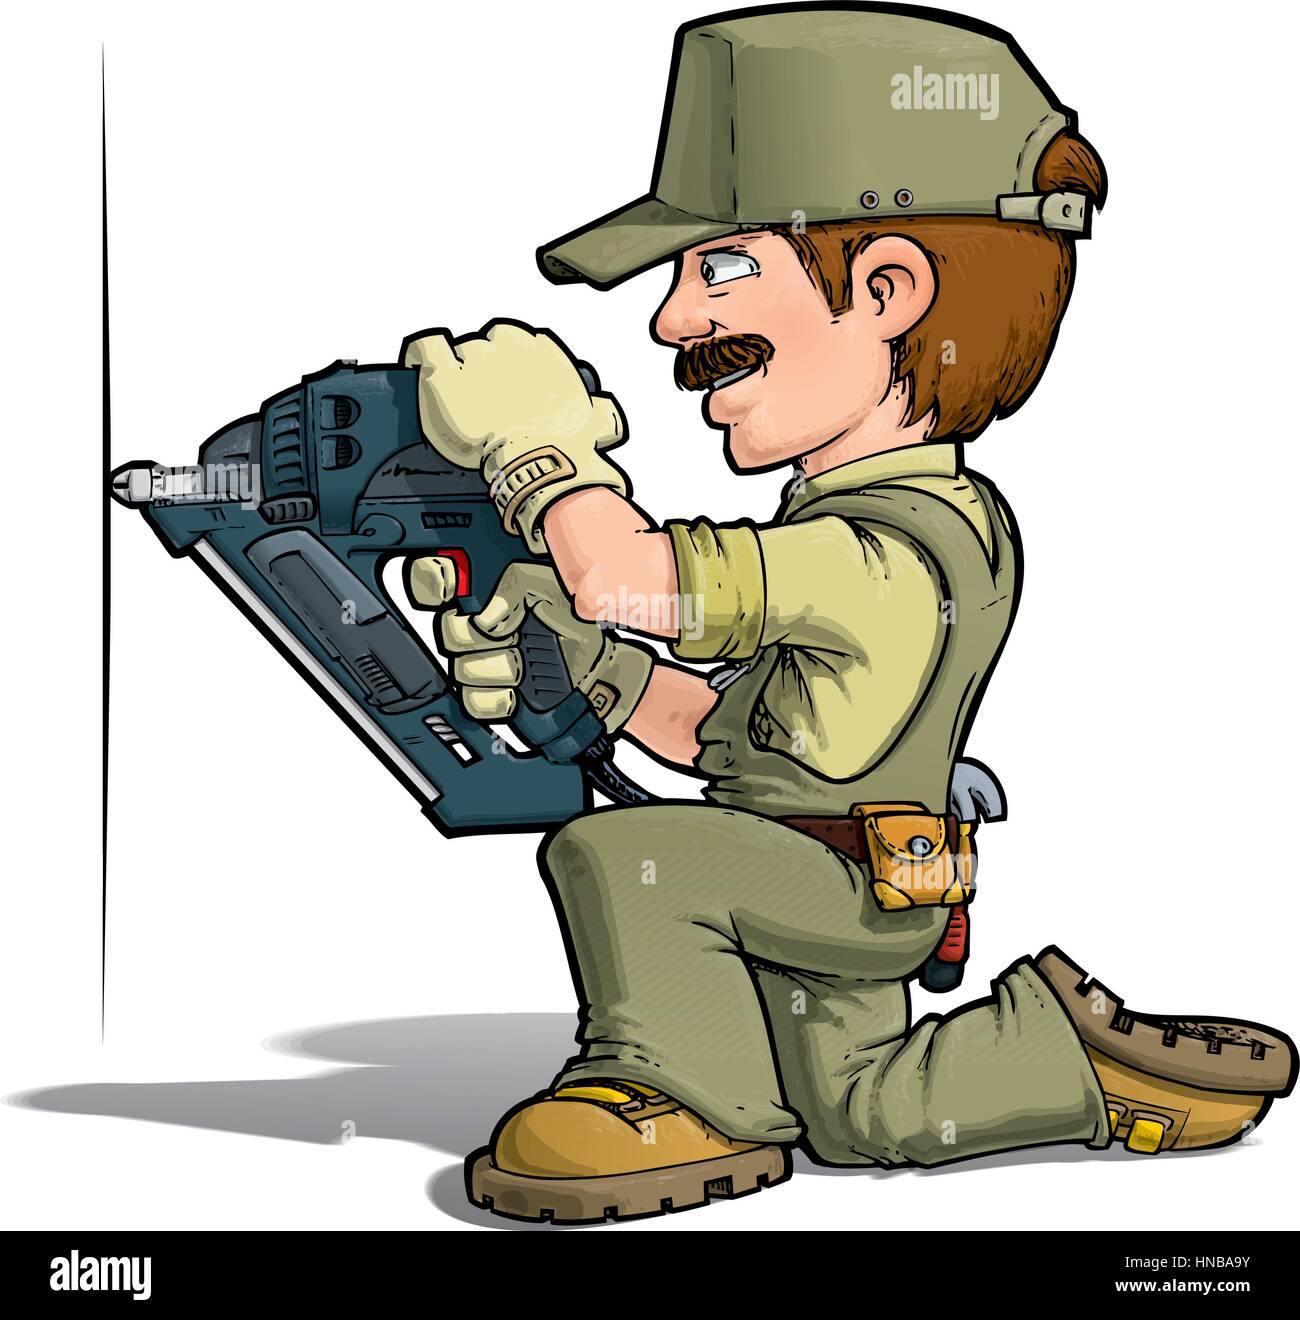 Cartoon illustration of a handyman nailing with a nail-gun. Stock Vector